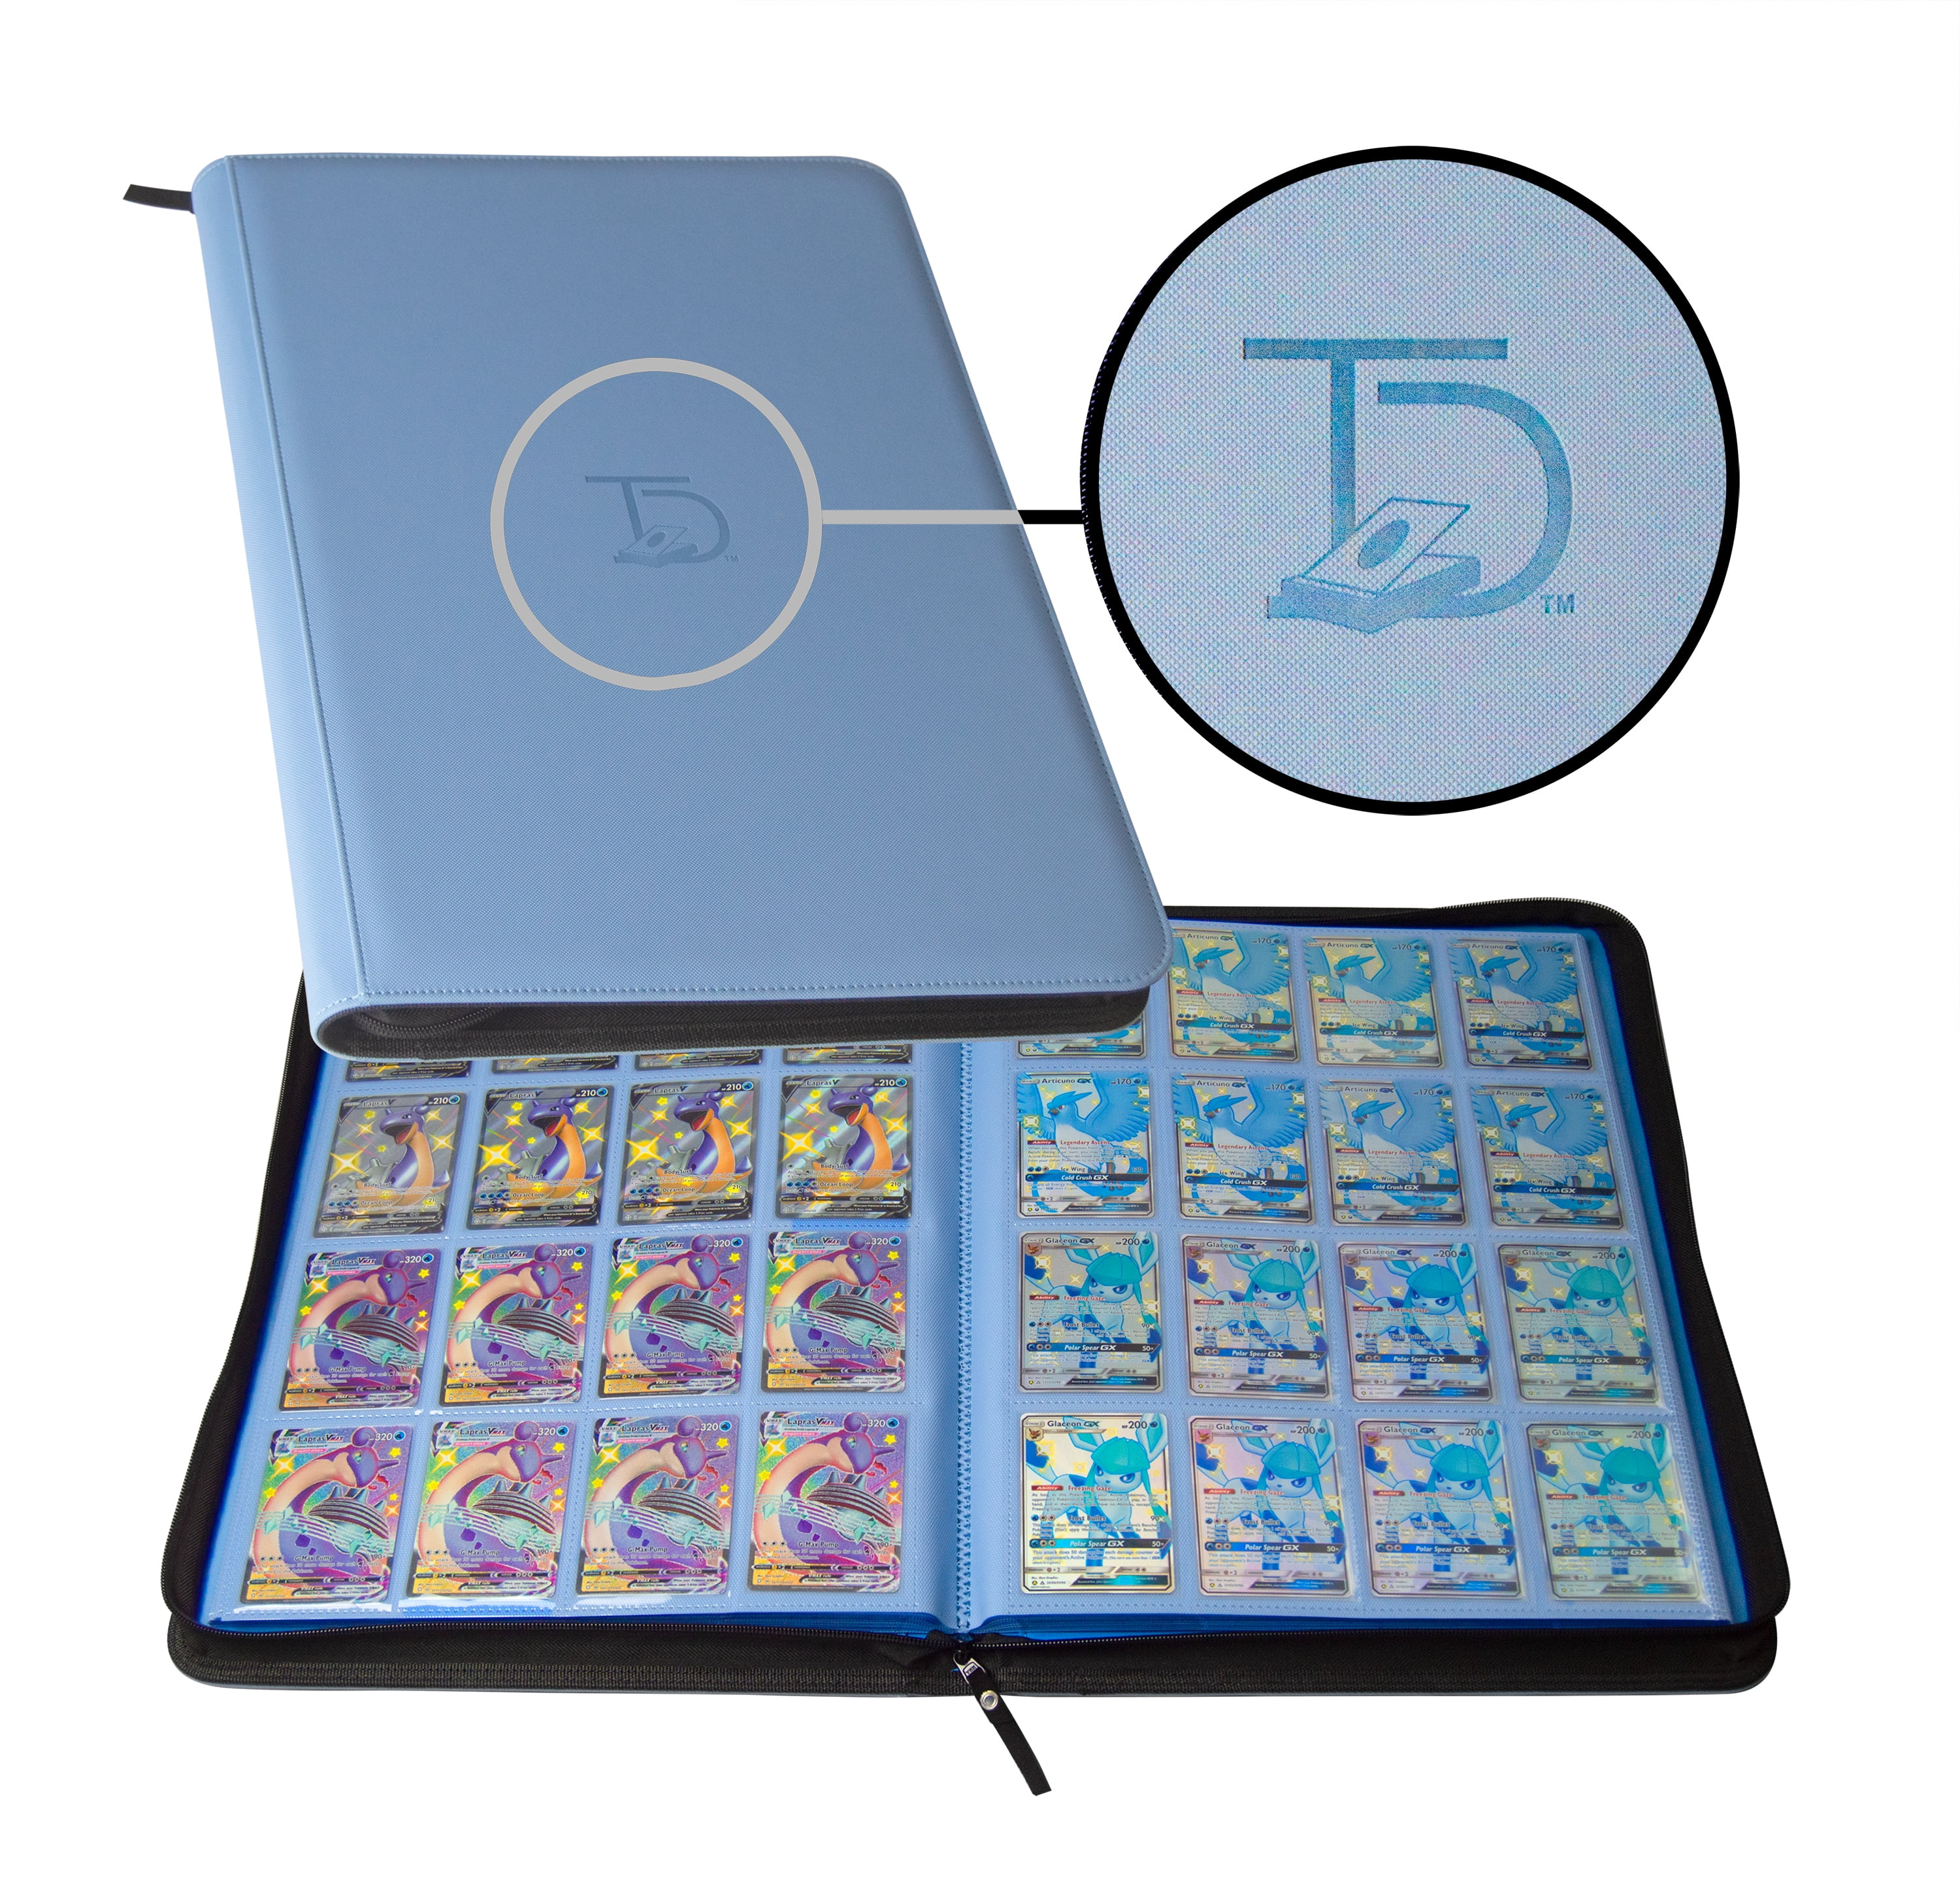 RED2 MADCAT 9 Pocket Trading Card Binder Folder,360 Side Loading Pocket Album Fits for Trading Card Games/ M.T.G/ C.A.H./Y.G.O/PM cards and All Other TCG card game 